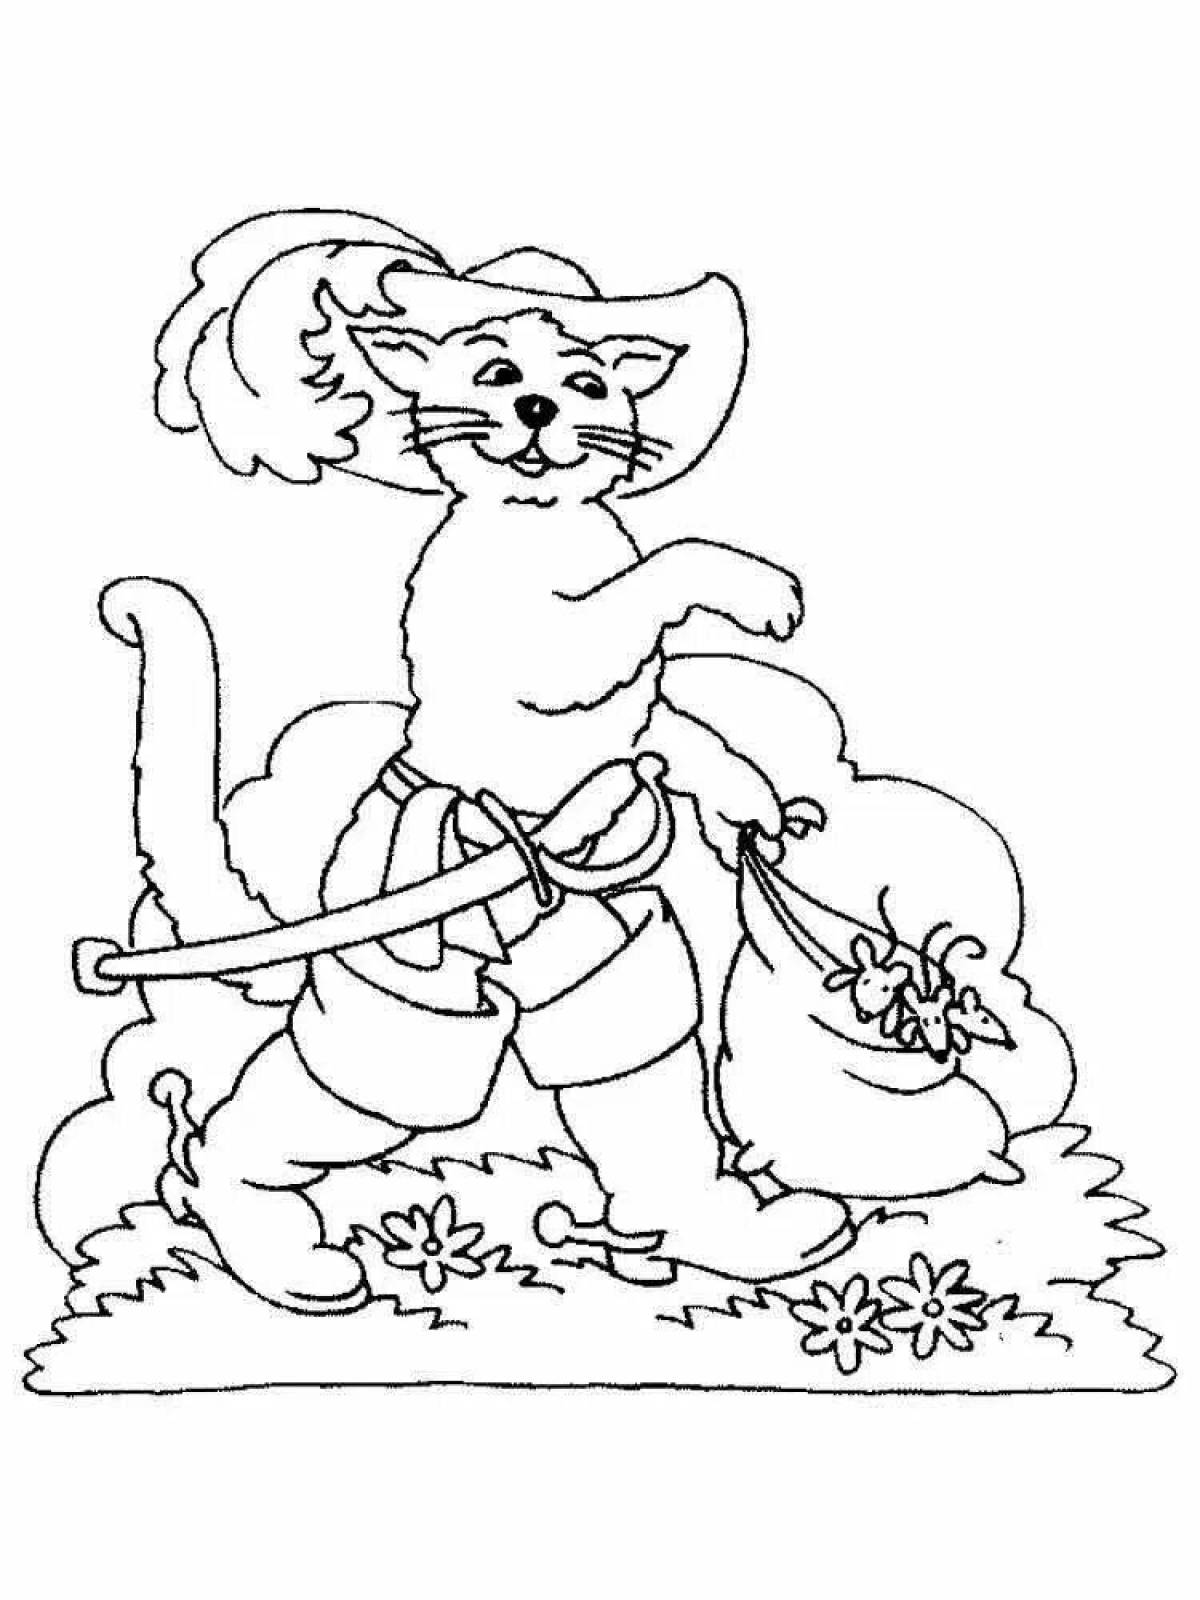 Волшебная раскраска кота в сапогах шарля перро